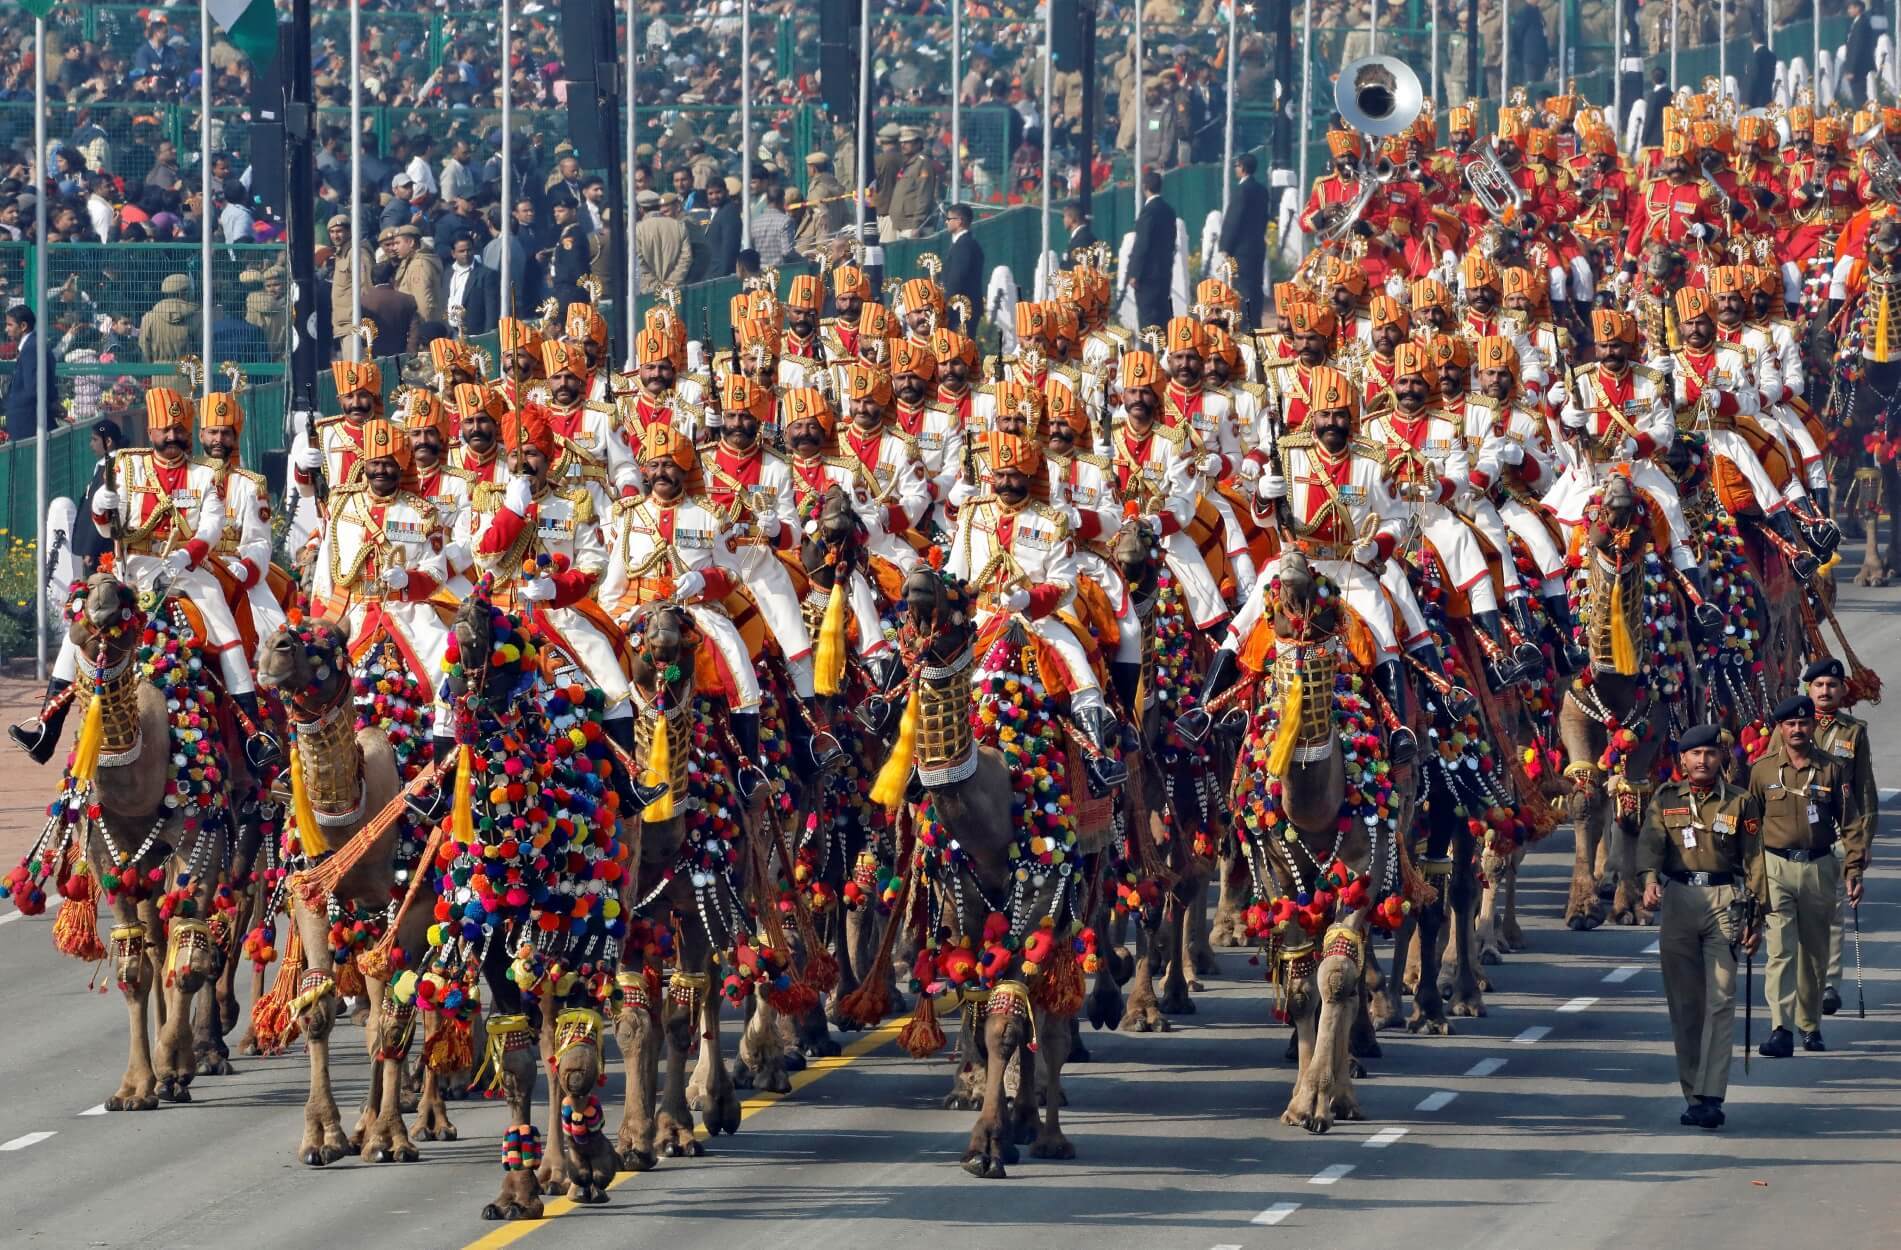 Ινδία: Άρματα μάχης, μηχανάκια και καμήλες στη μεγάλη στρατιωτική παρέλαση